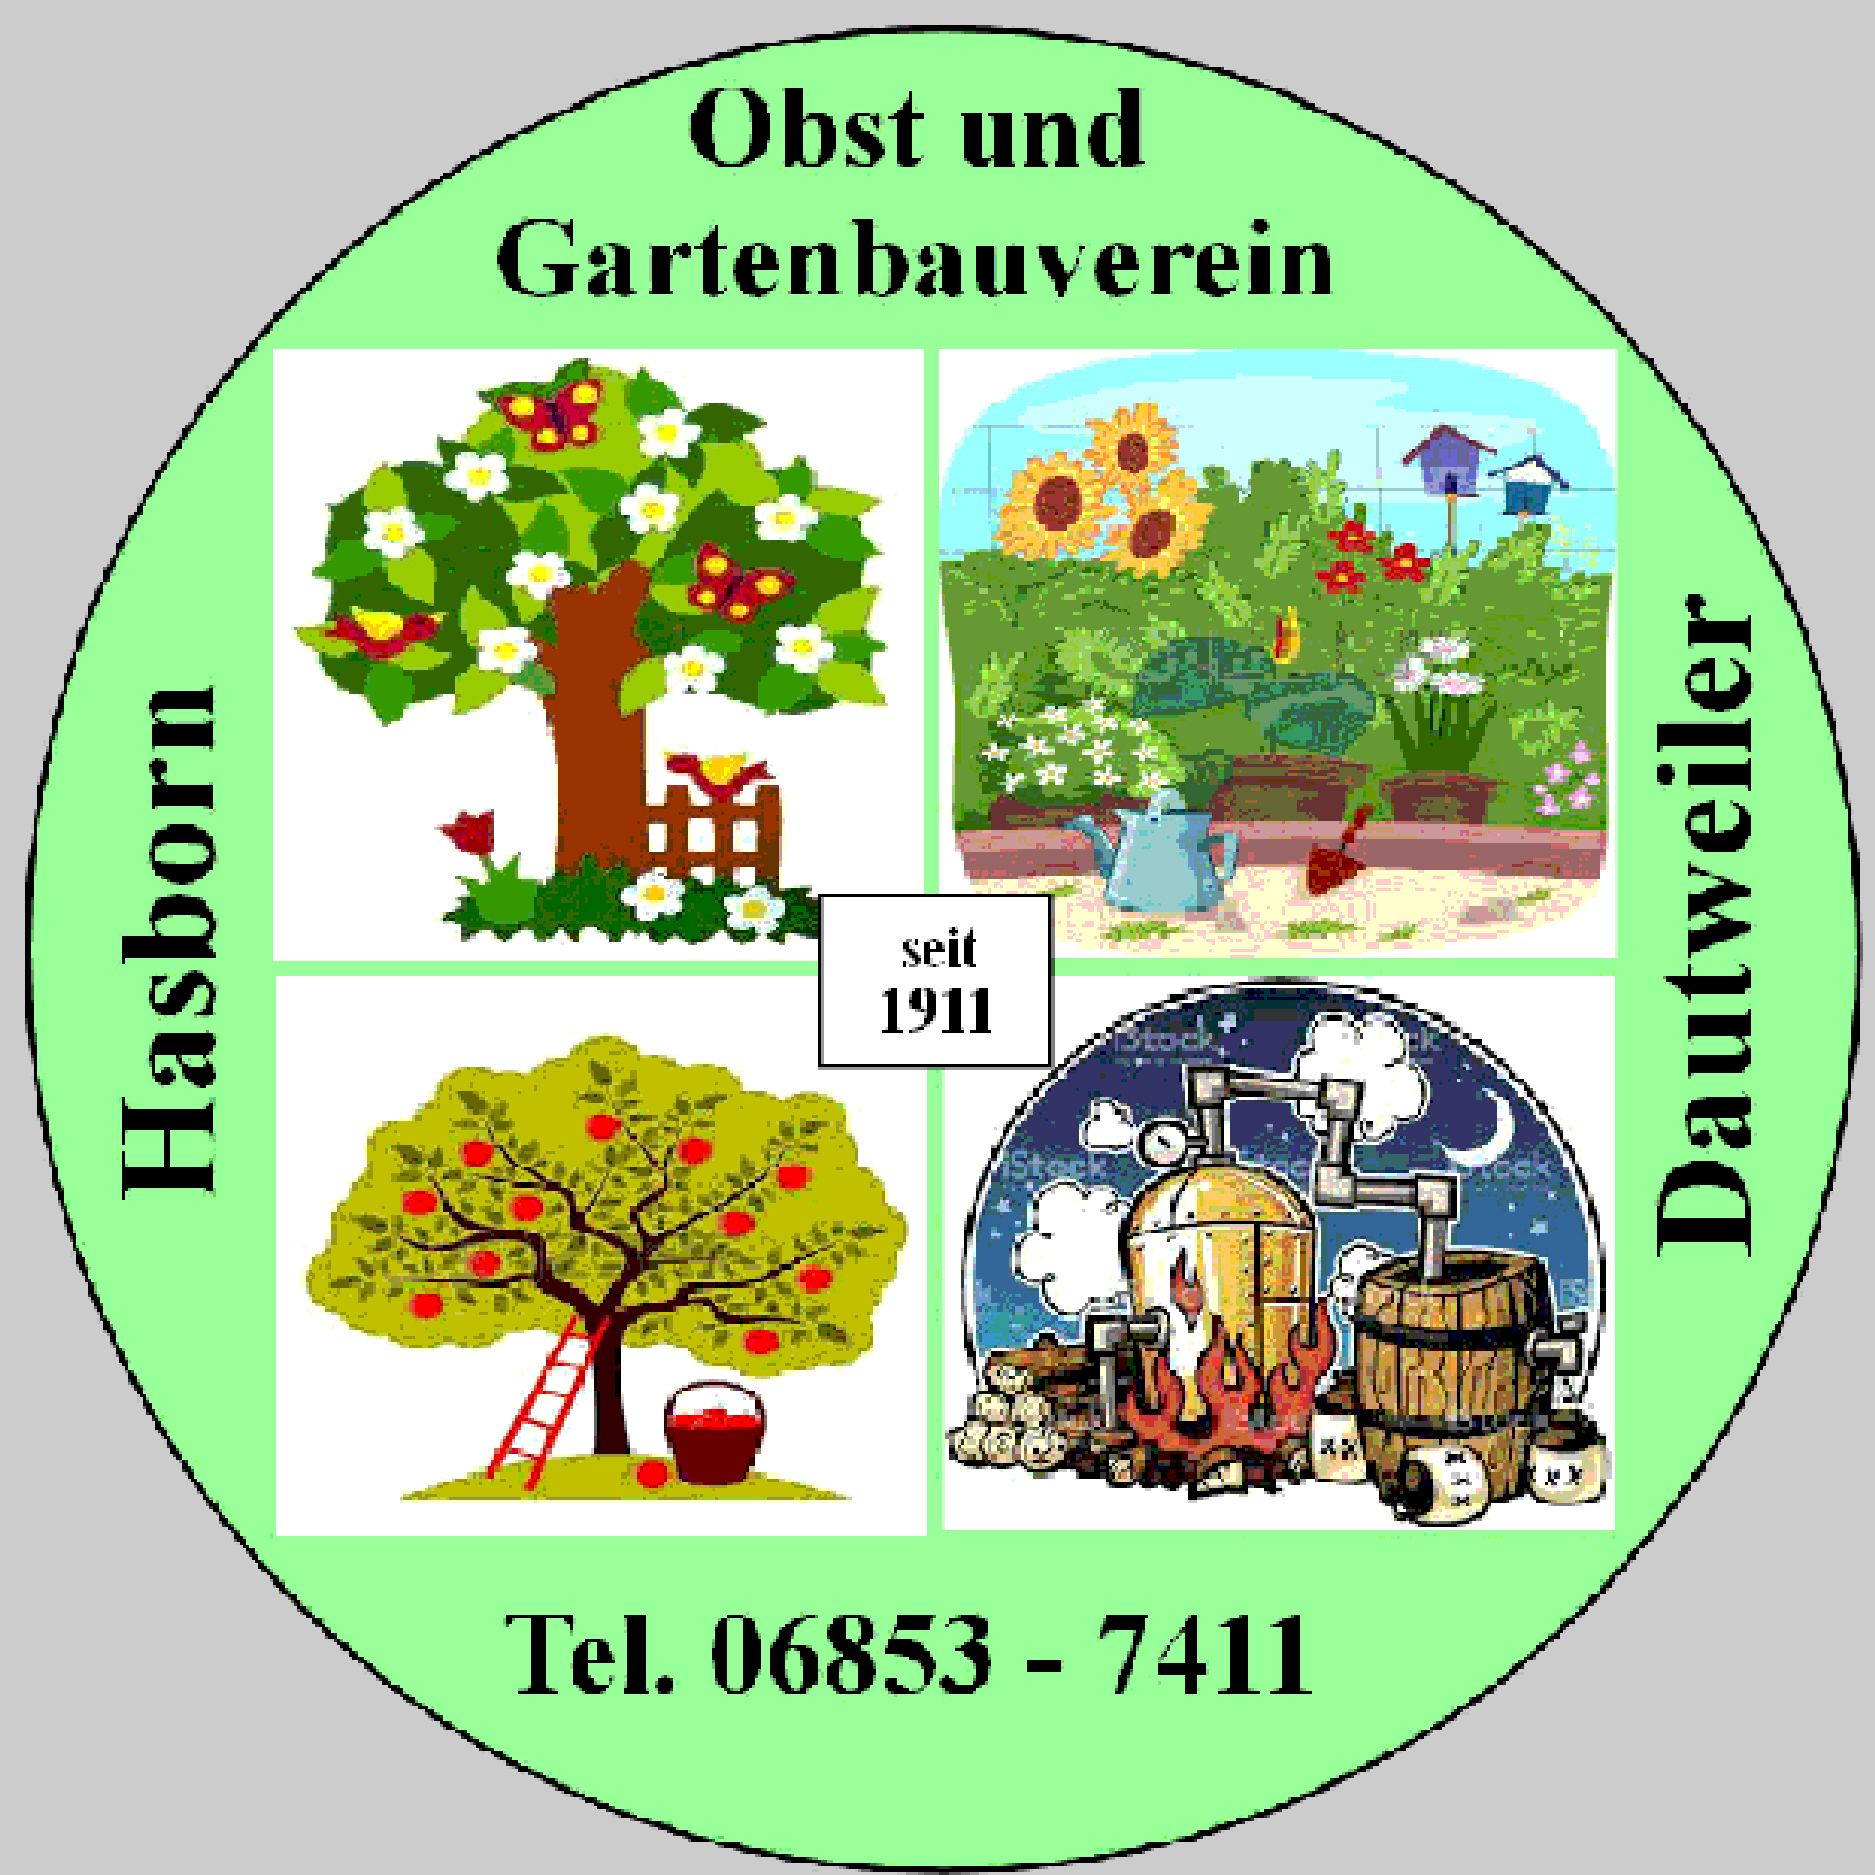 Profilbild des Vereins Obst- und Gartenbauverein Hasborn-Dautweiler e.V.